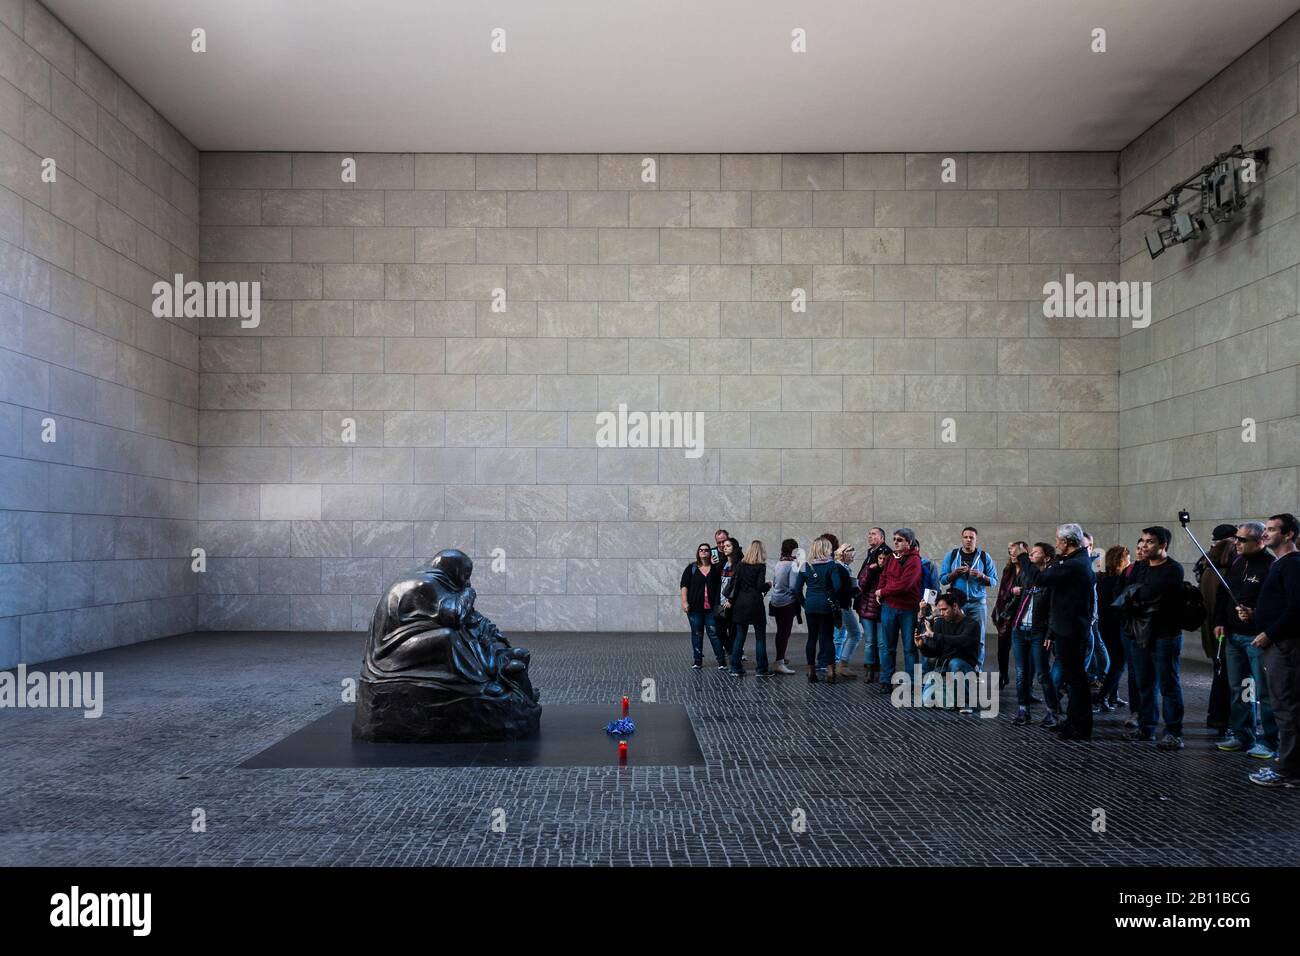 Les touristes regardent la mère avec le fils mort, sculpture de Käthe Kollwitz, dans la Neue Wache, Unter den Linden, Mitte, Berlin, Allemagne Banque D'Images